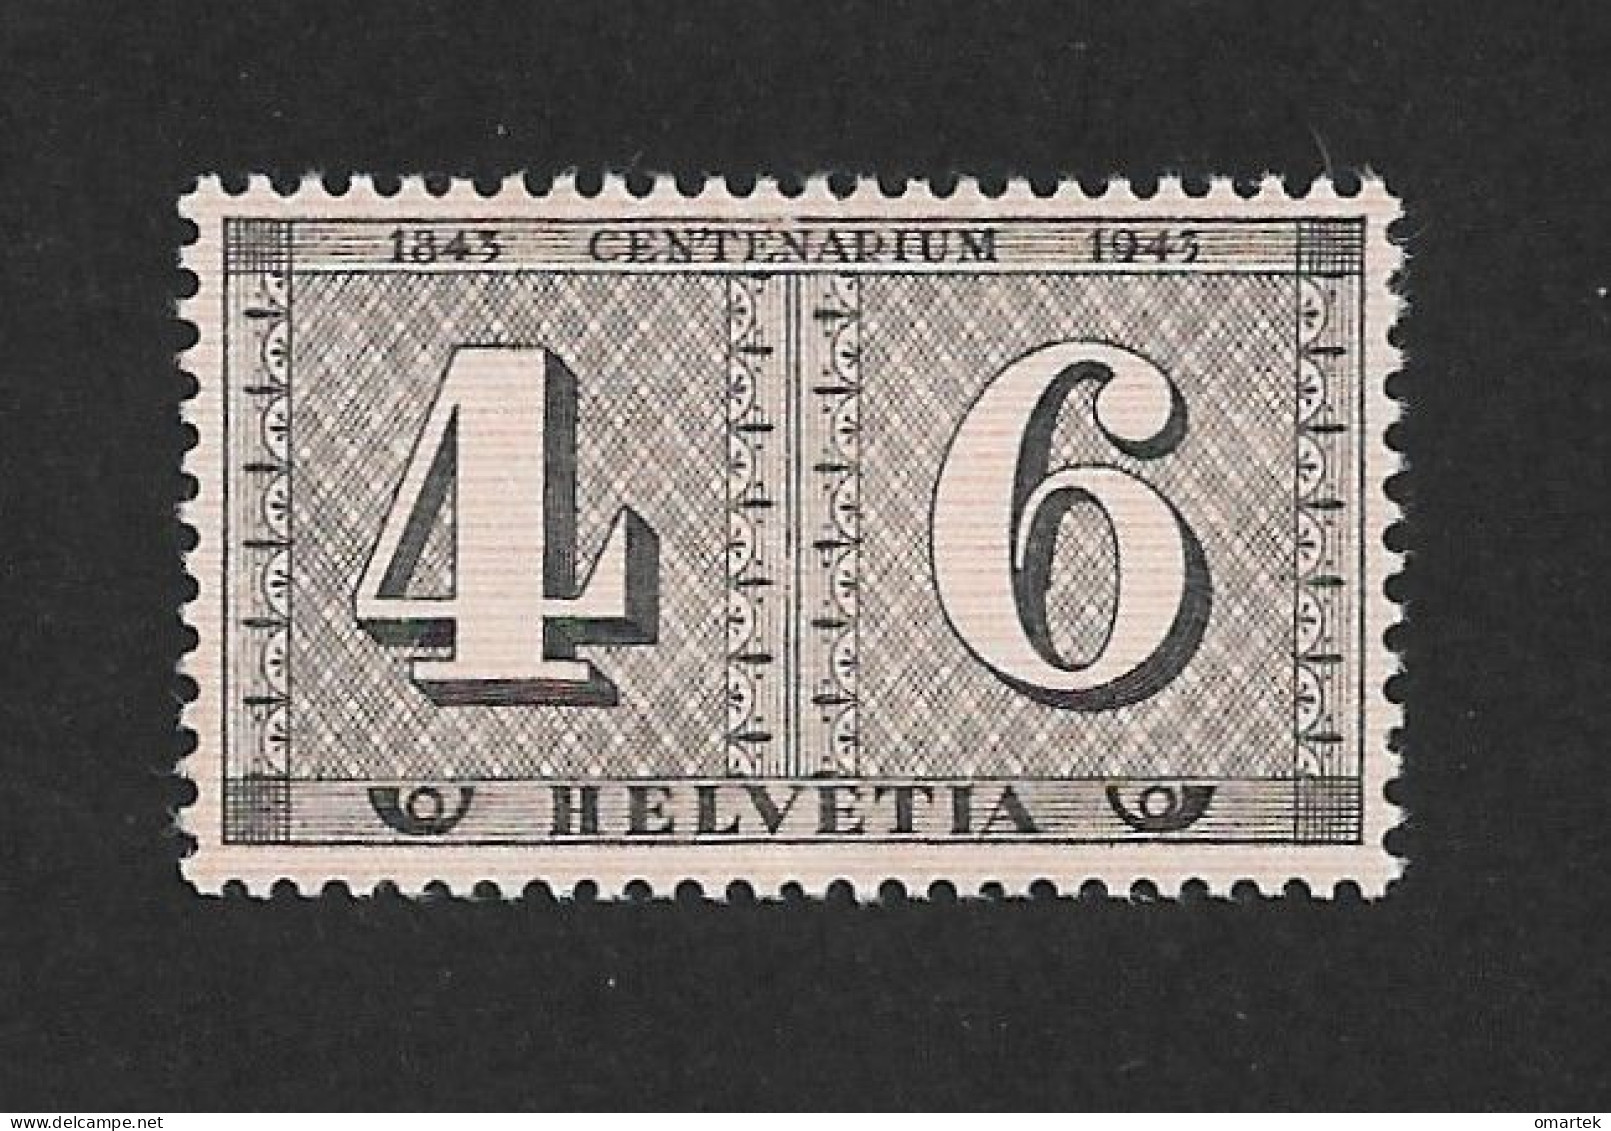 Schweiz Switzerland Helvetia 1943 MNH Mi 416 Sc 287 Zu 258 Yt 384 Stamp Jubilee.. - Unused Stamps